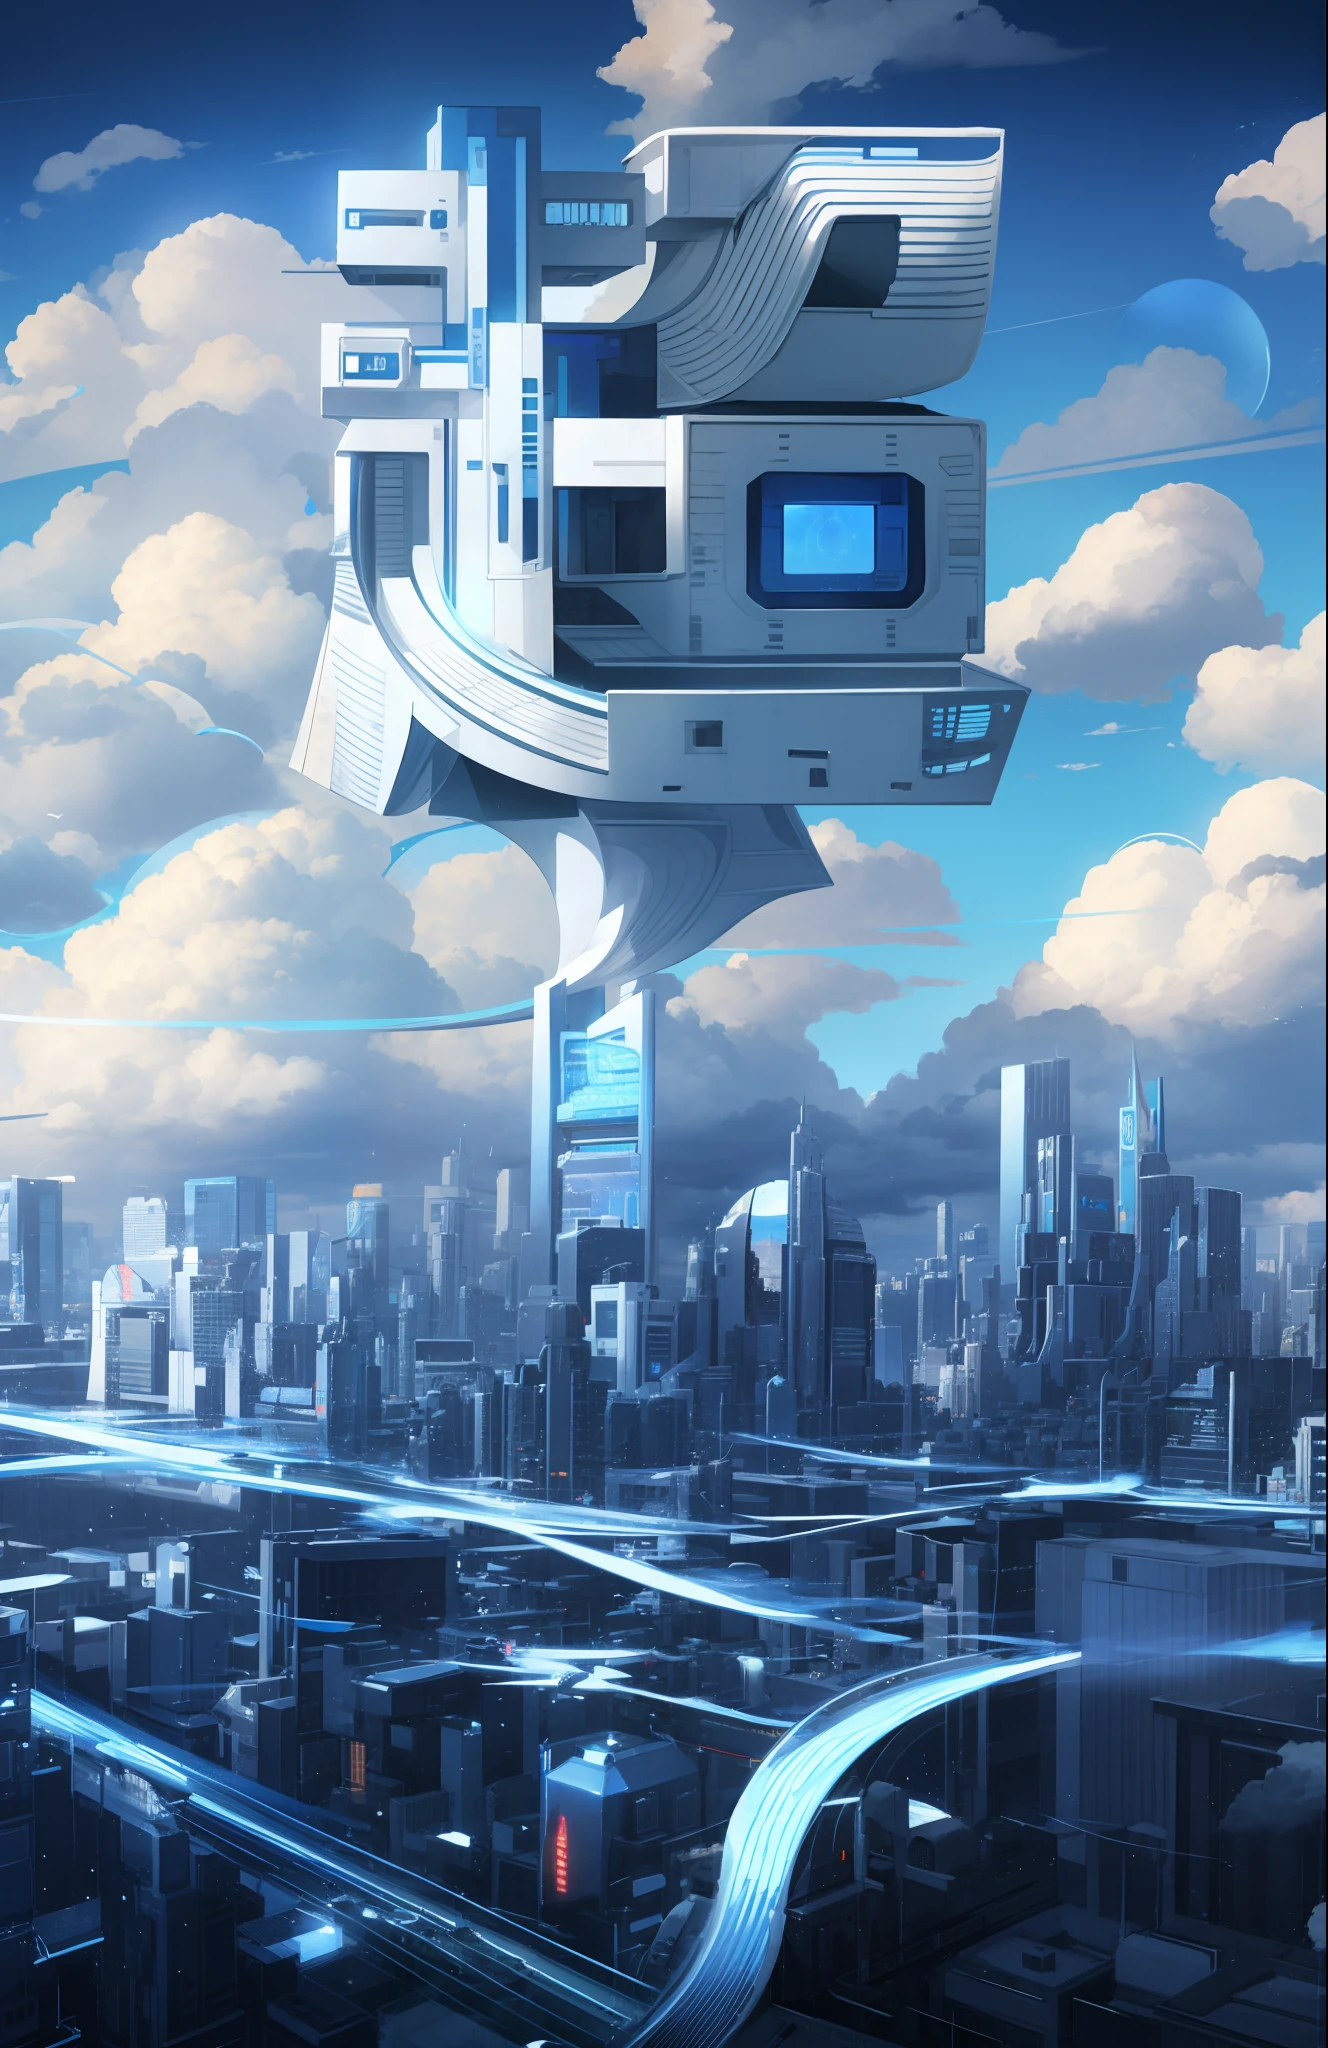 未来之城、机器人、平民、天空中飘浮着厚厚的云彩、连接城市网络、高大的房子、蓝天、未来主义、发光主义、射线追踪、特写乳沟、卡农、超高清、杰作、高细节、高品质、高分辨率 -- v 6